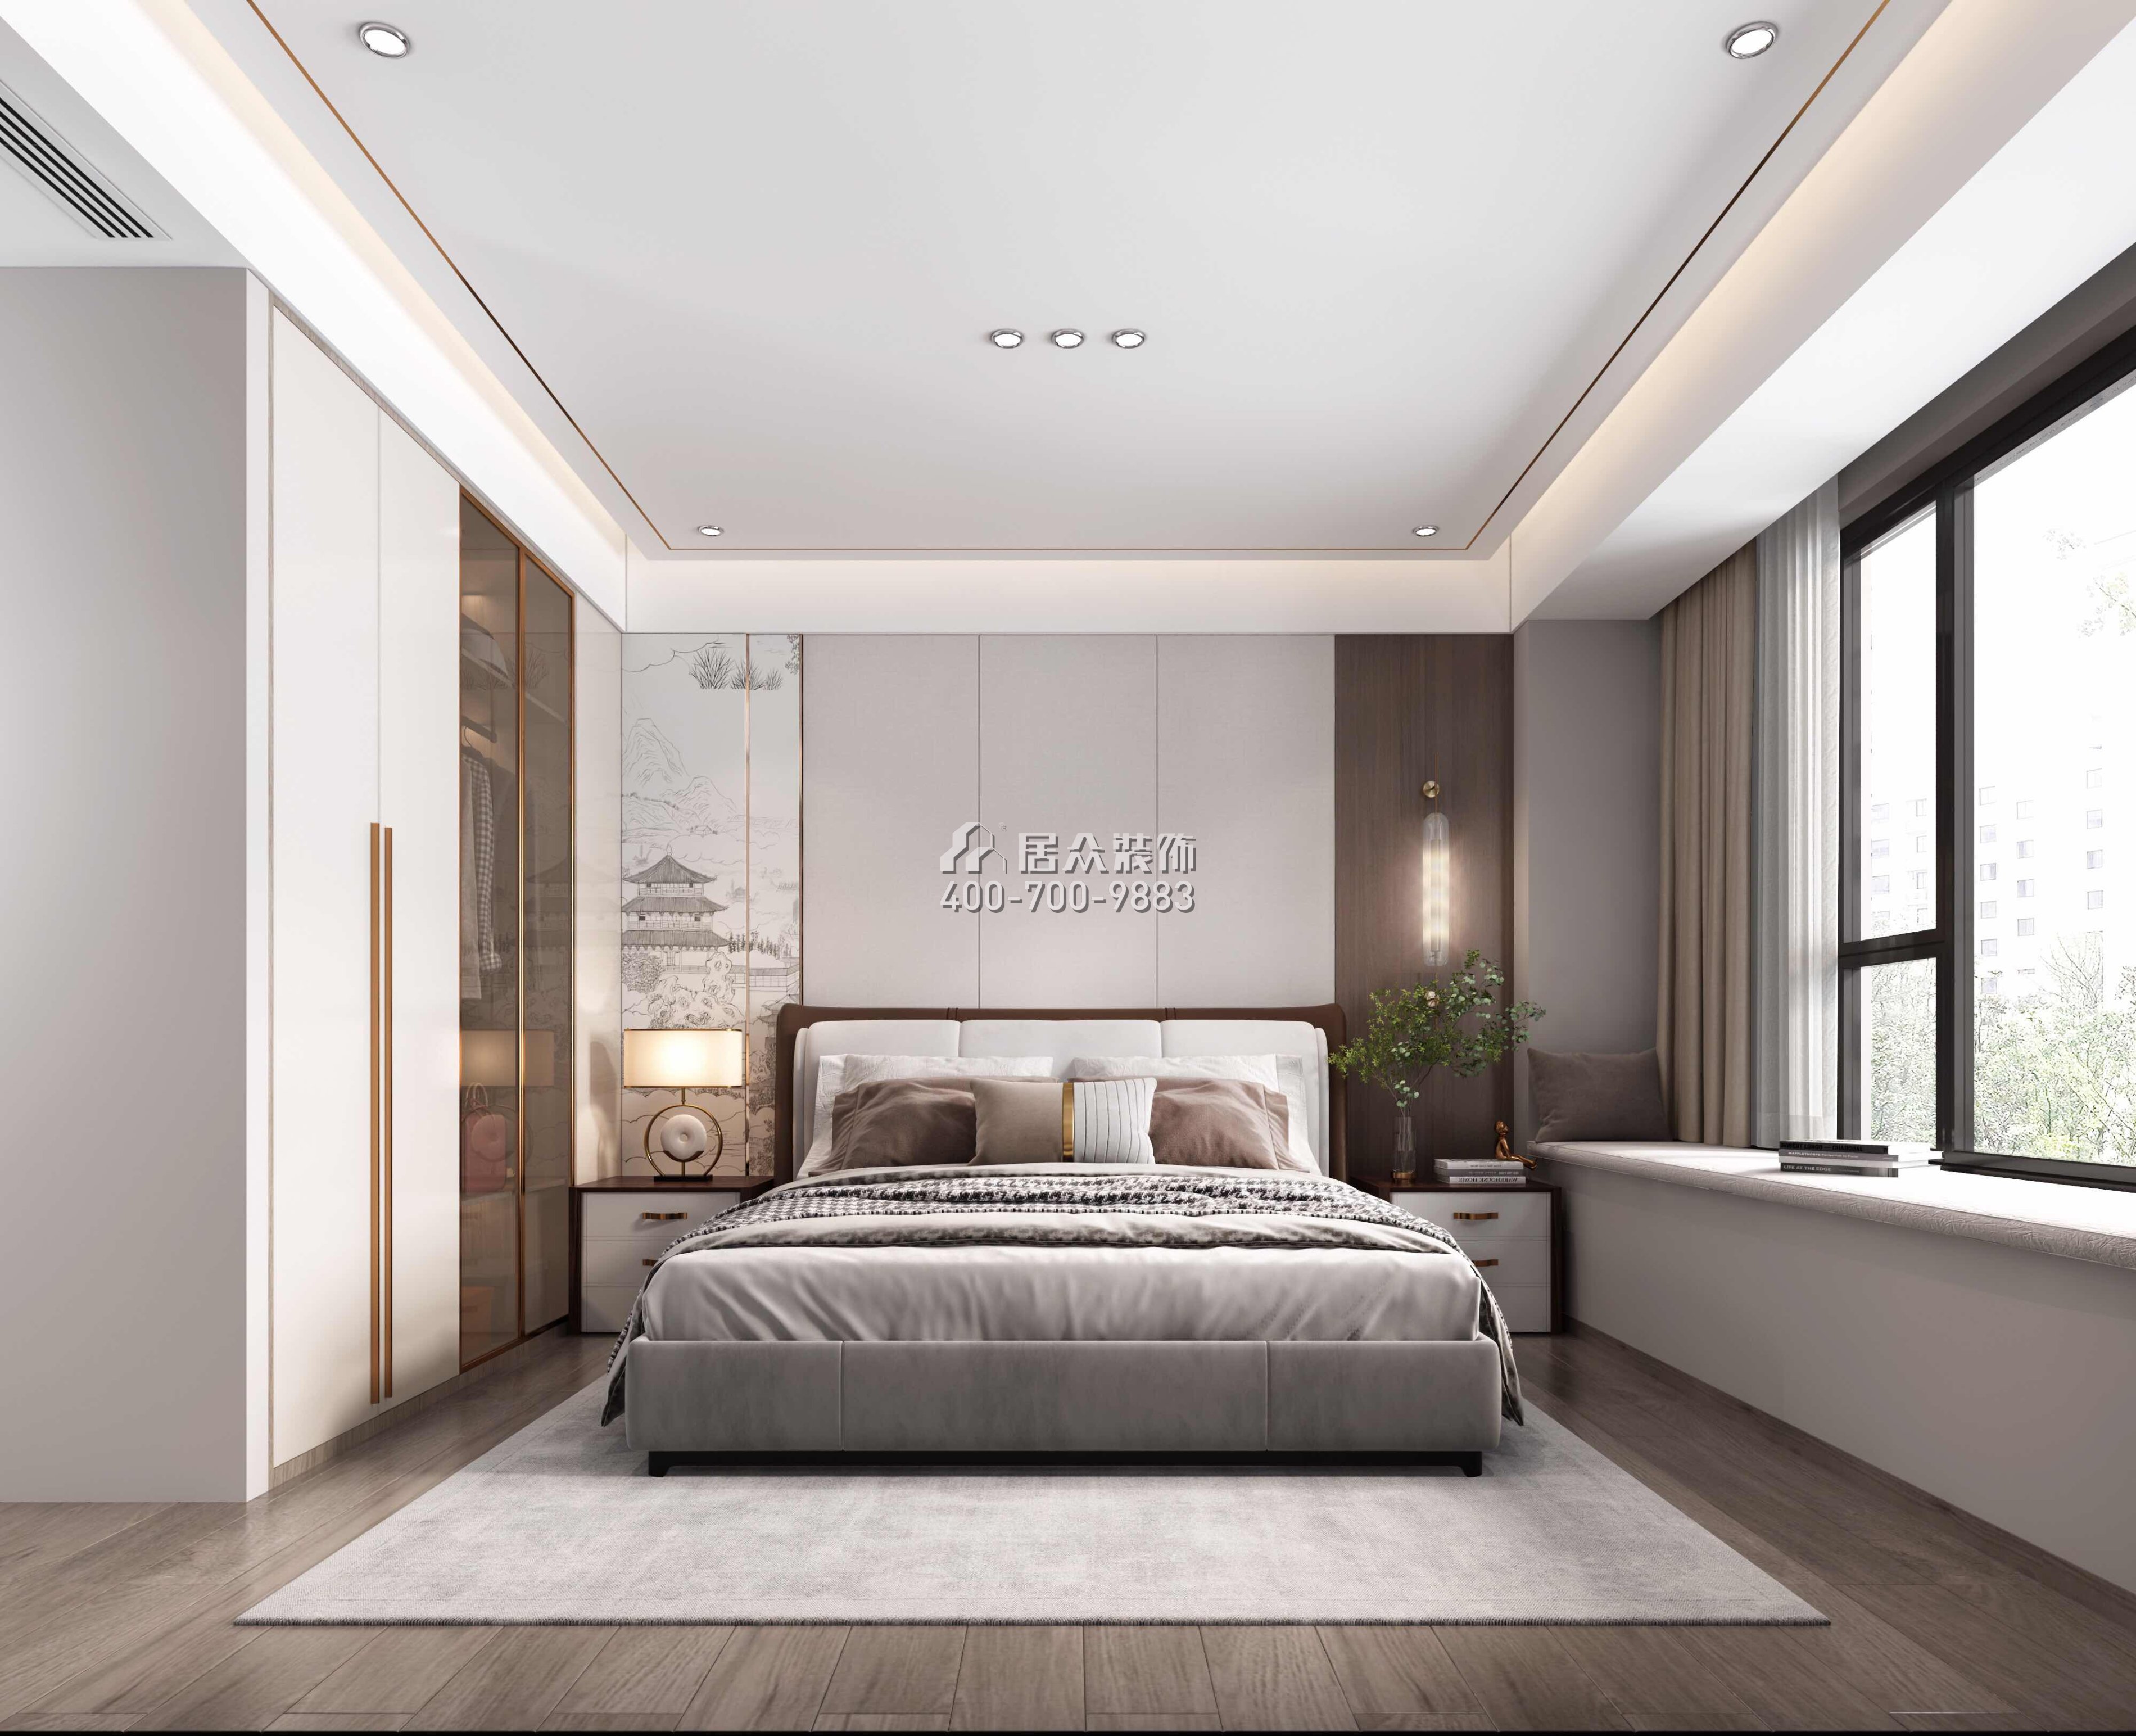 翠湖香山140平方米中式風格平層戶型臥室裝修效果圖